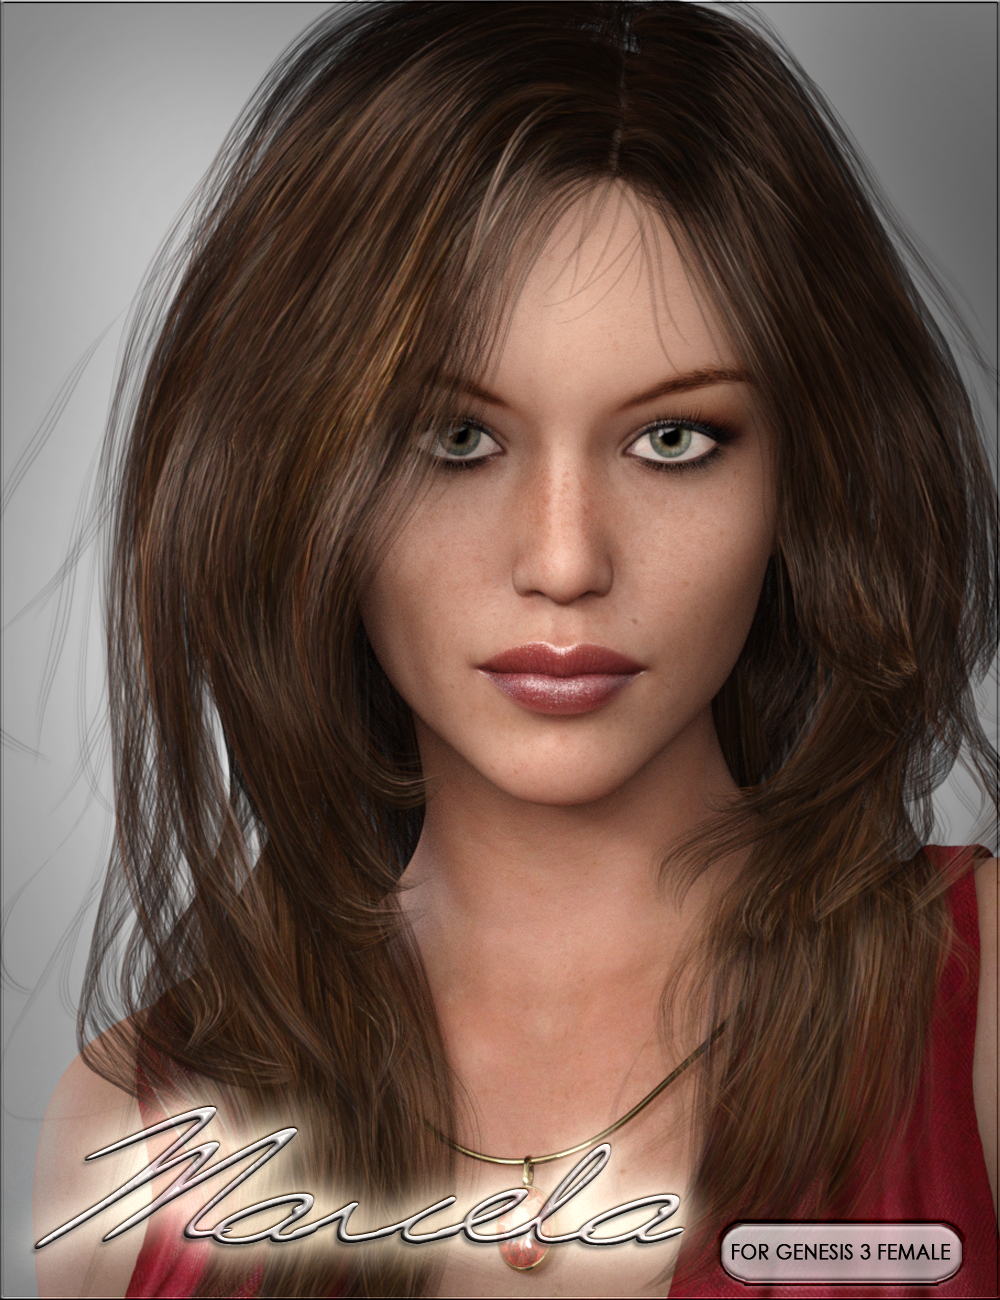 HPVYK Marcela for Genesis 3 Female by: SR3vyktohria, 3D Models by Daz 3D